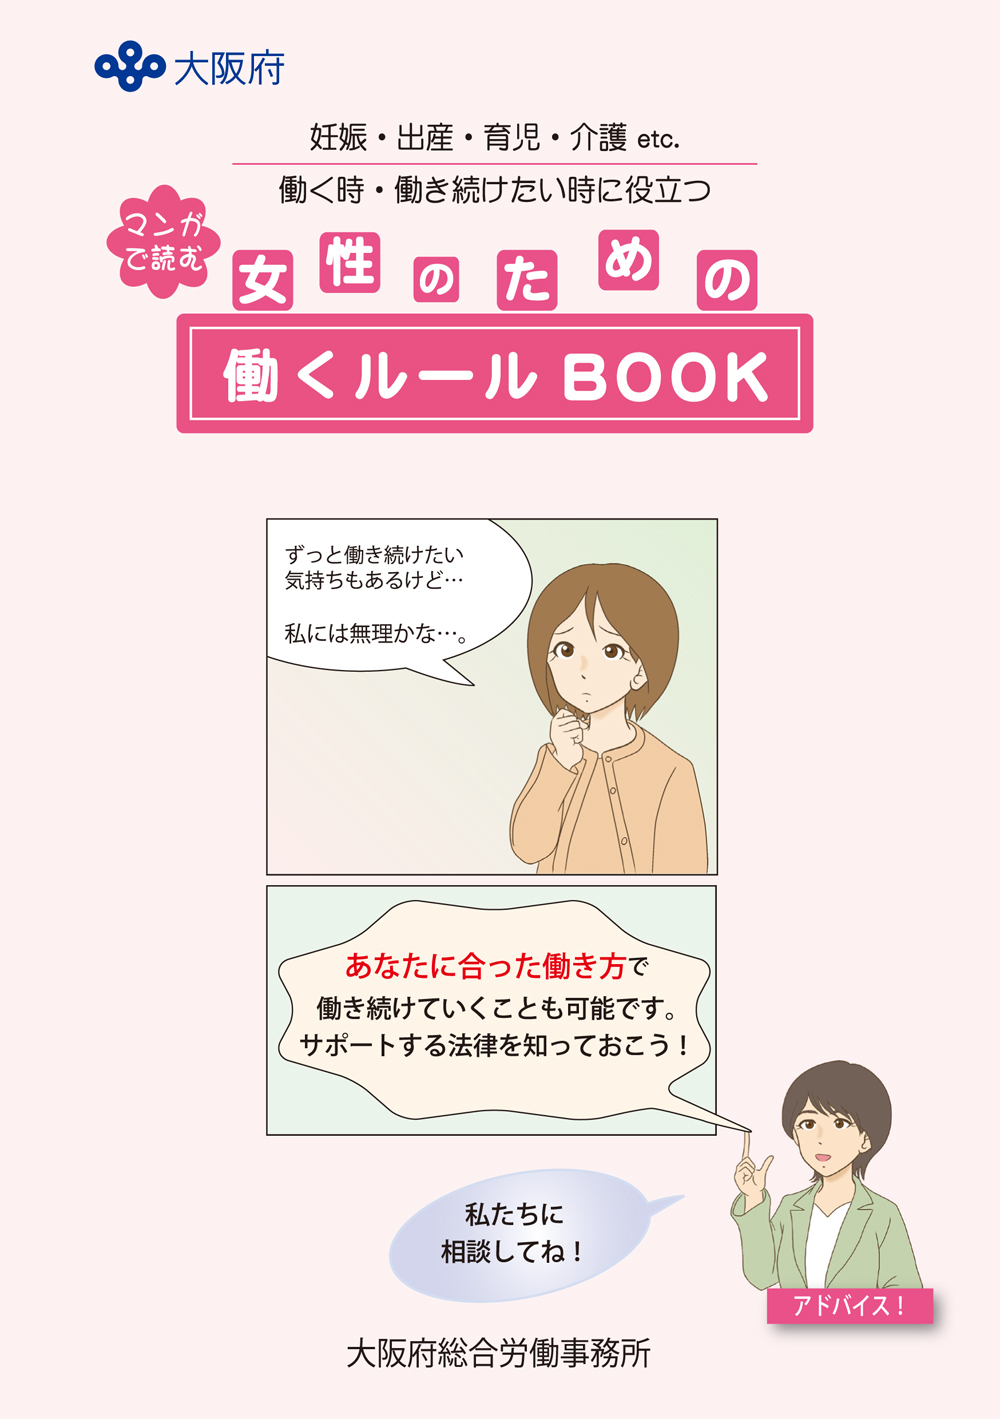 大阪府総合労働事務所「女性が働きつづけるためのルールブック」